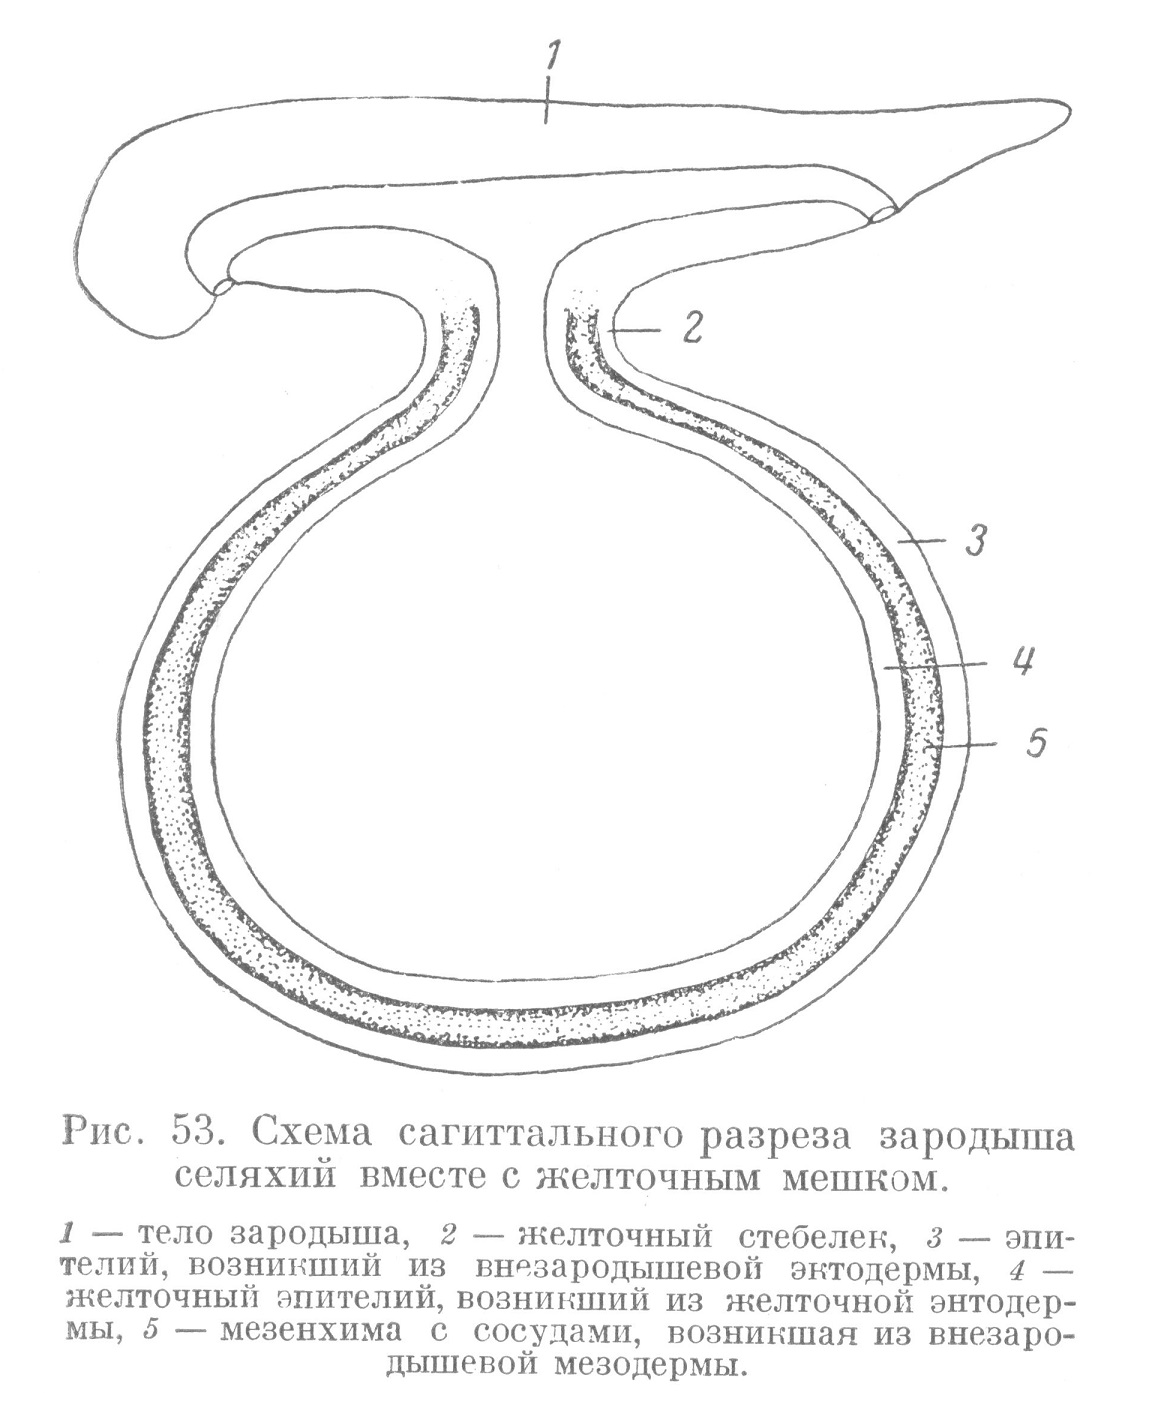 Схема сагиттального разреза зародыша селяхий вместе с желточным мешком